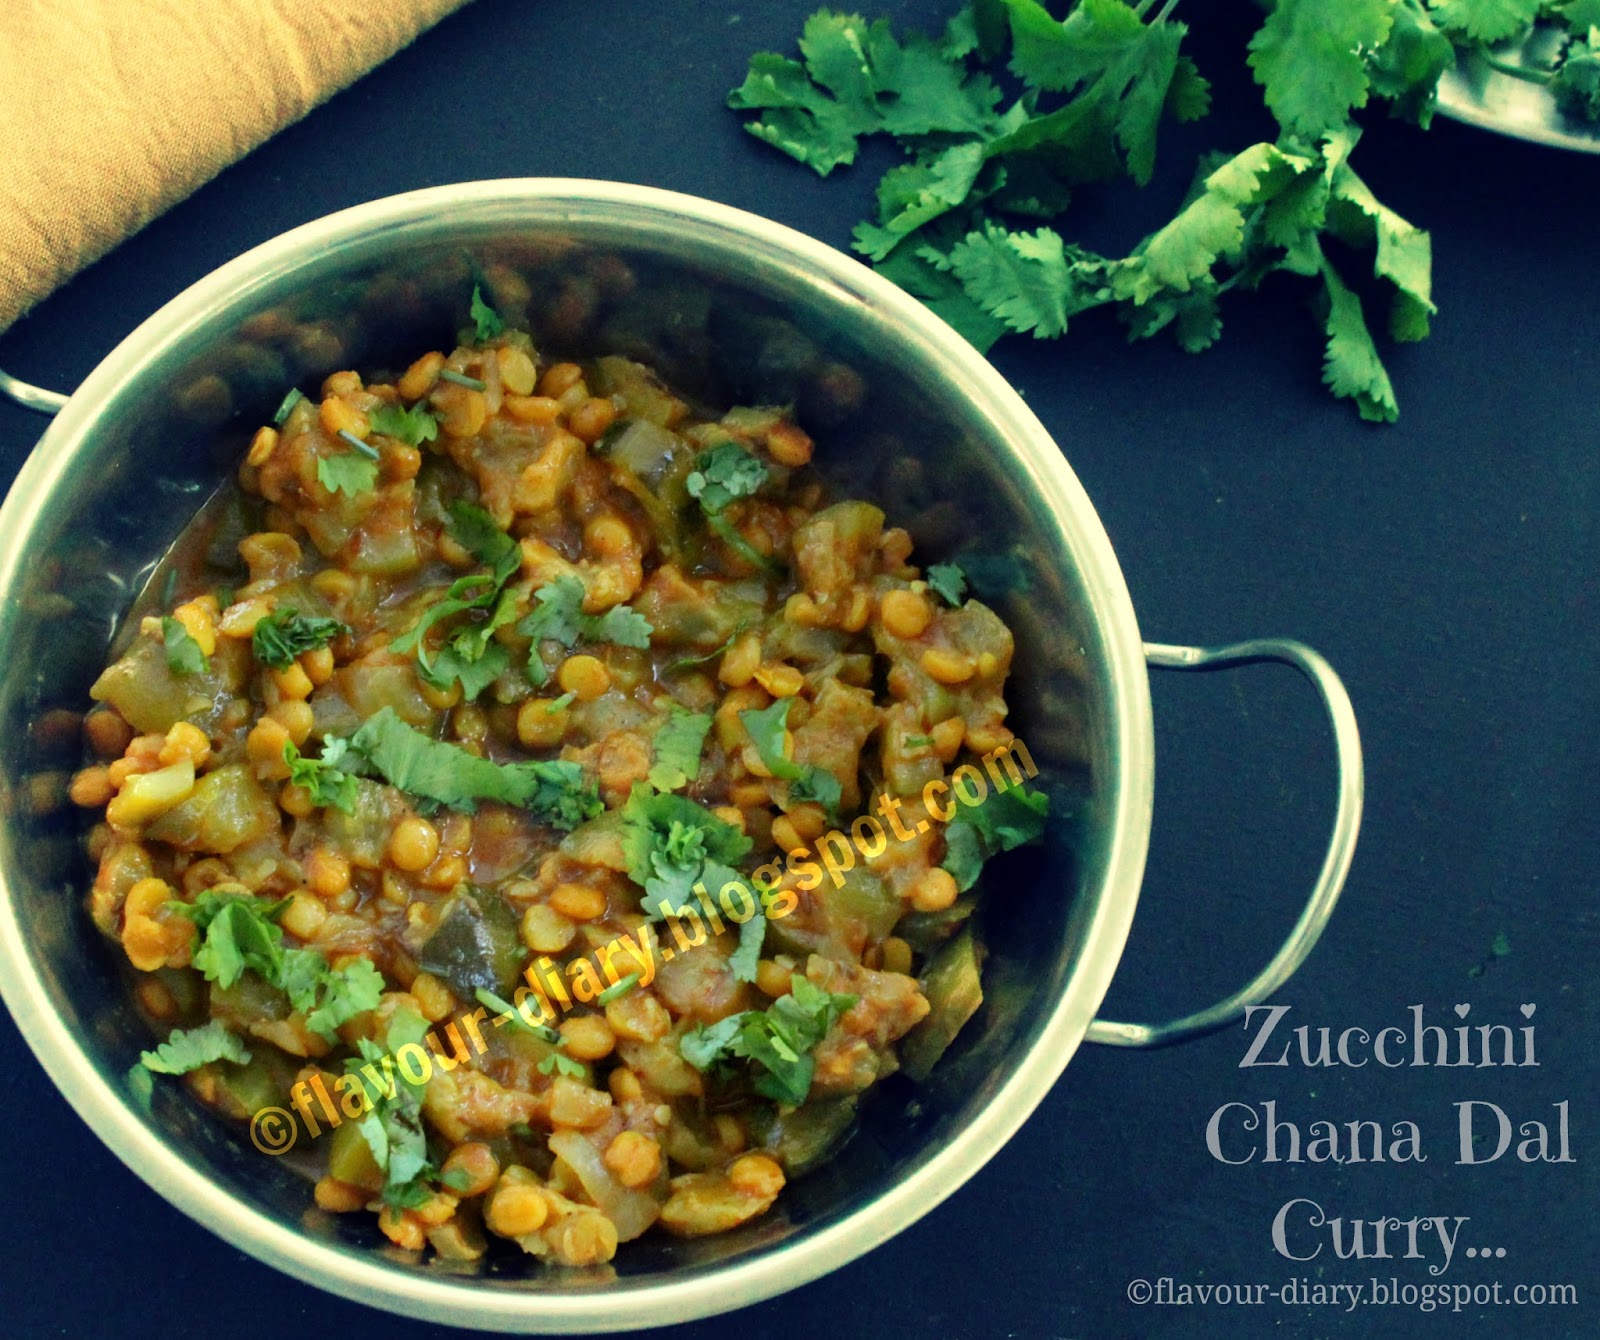 Zucchini Chana Dal Indian Curry Recipe